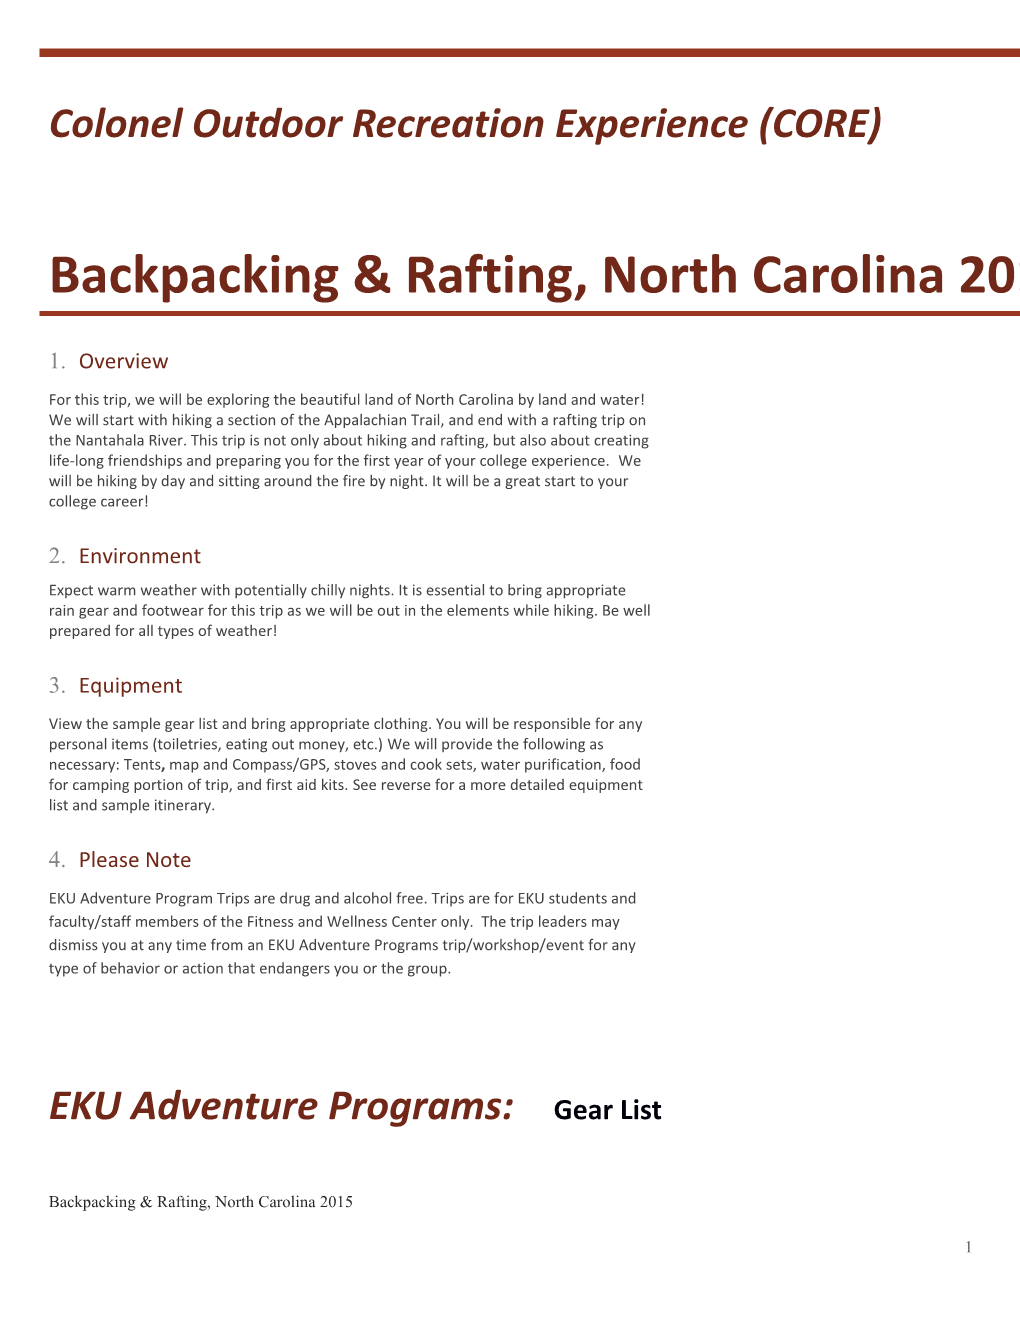 Backpacking & Rafting, North Carolina 2015